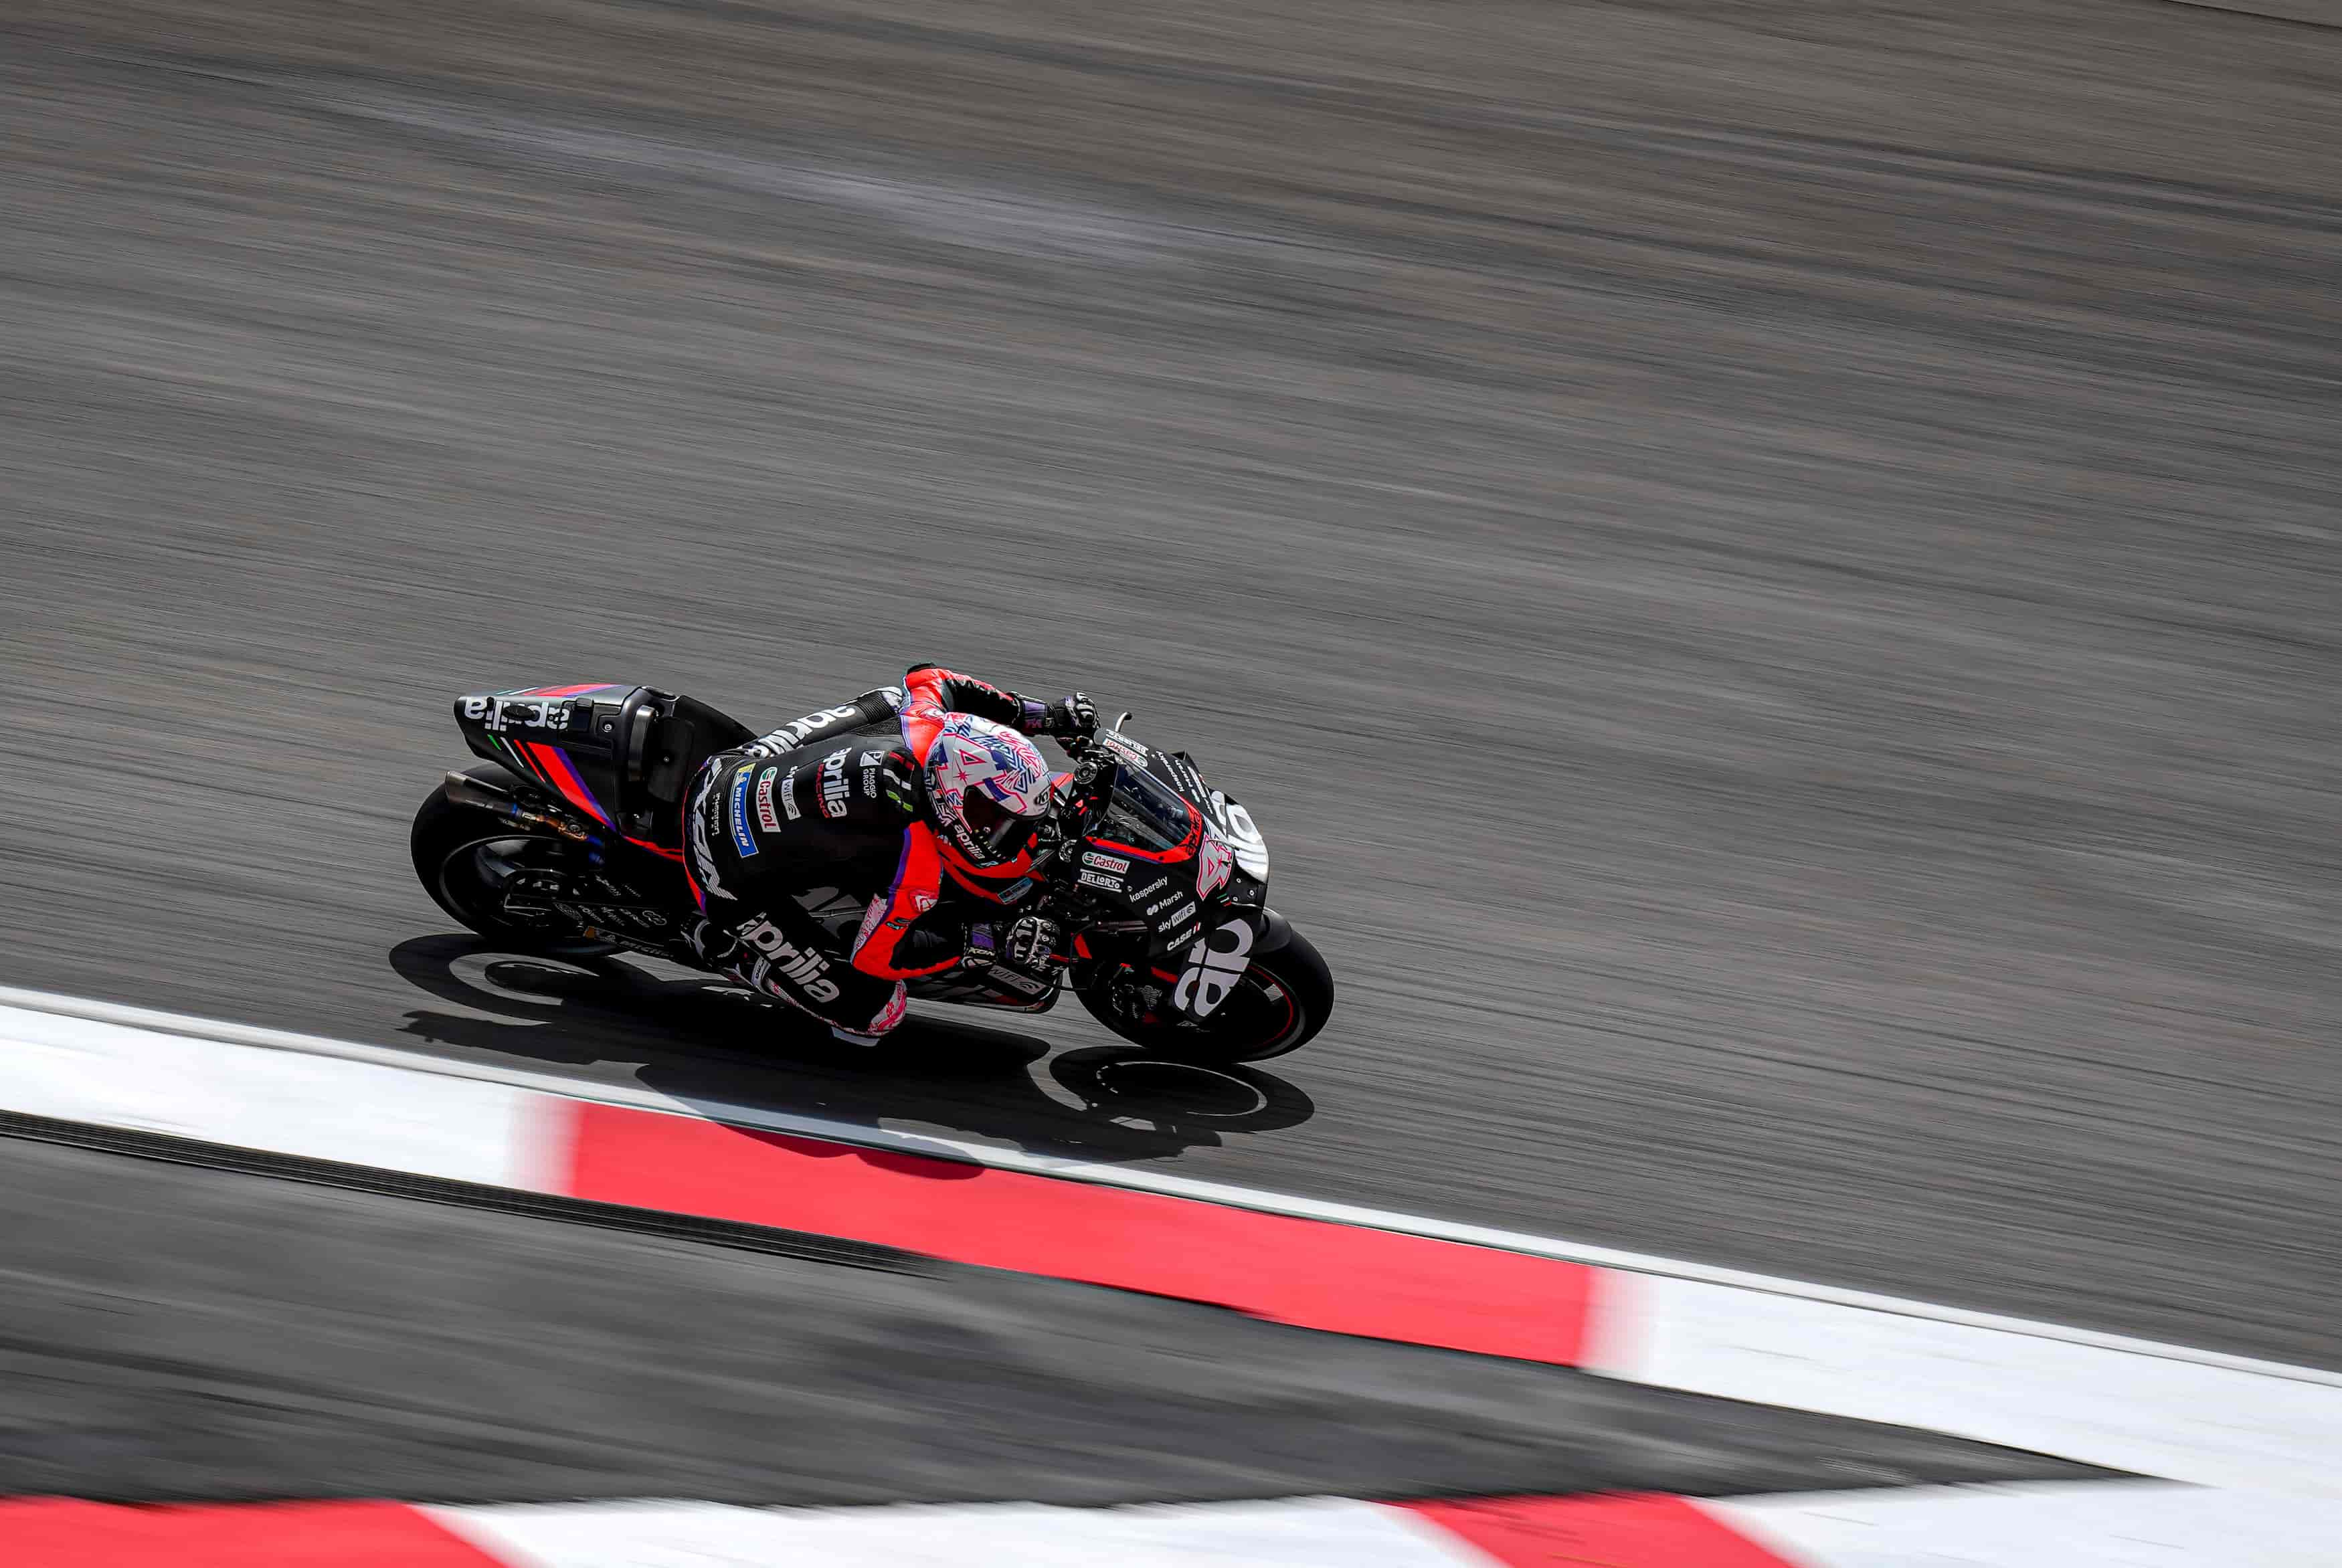 Jelang MotoGP 2022, Spanyol: RS-GP Makin Kencang, 3 Pembalap Aprilia Racing Optimis di Jerez